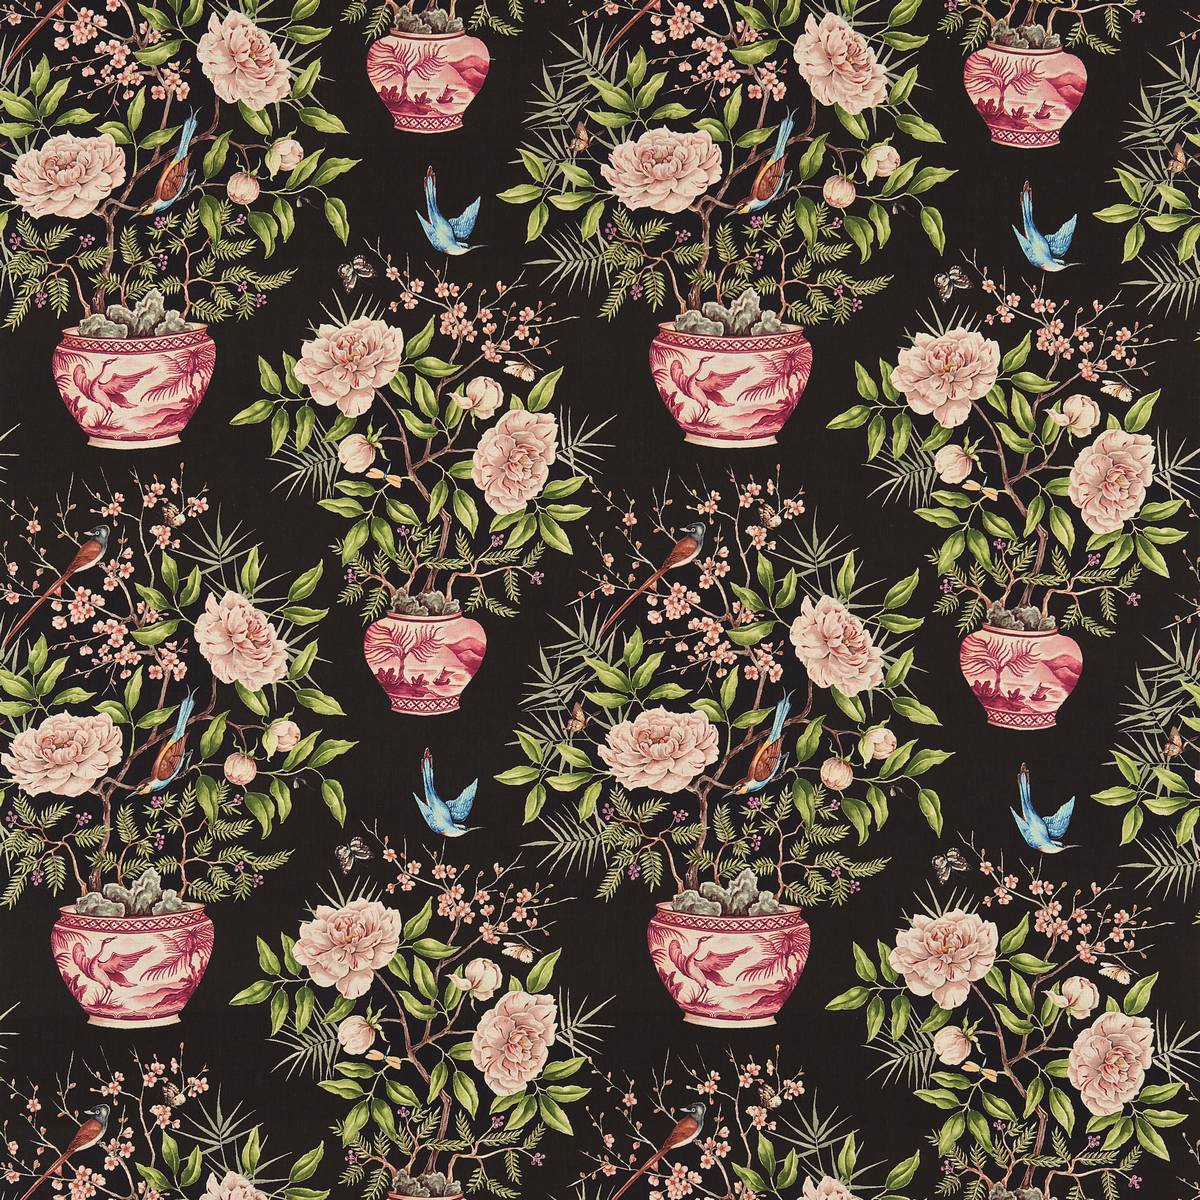 Romey's Garden Ebony Fabric by Zoffany